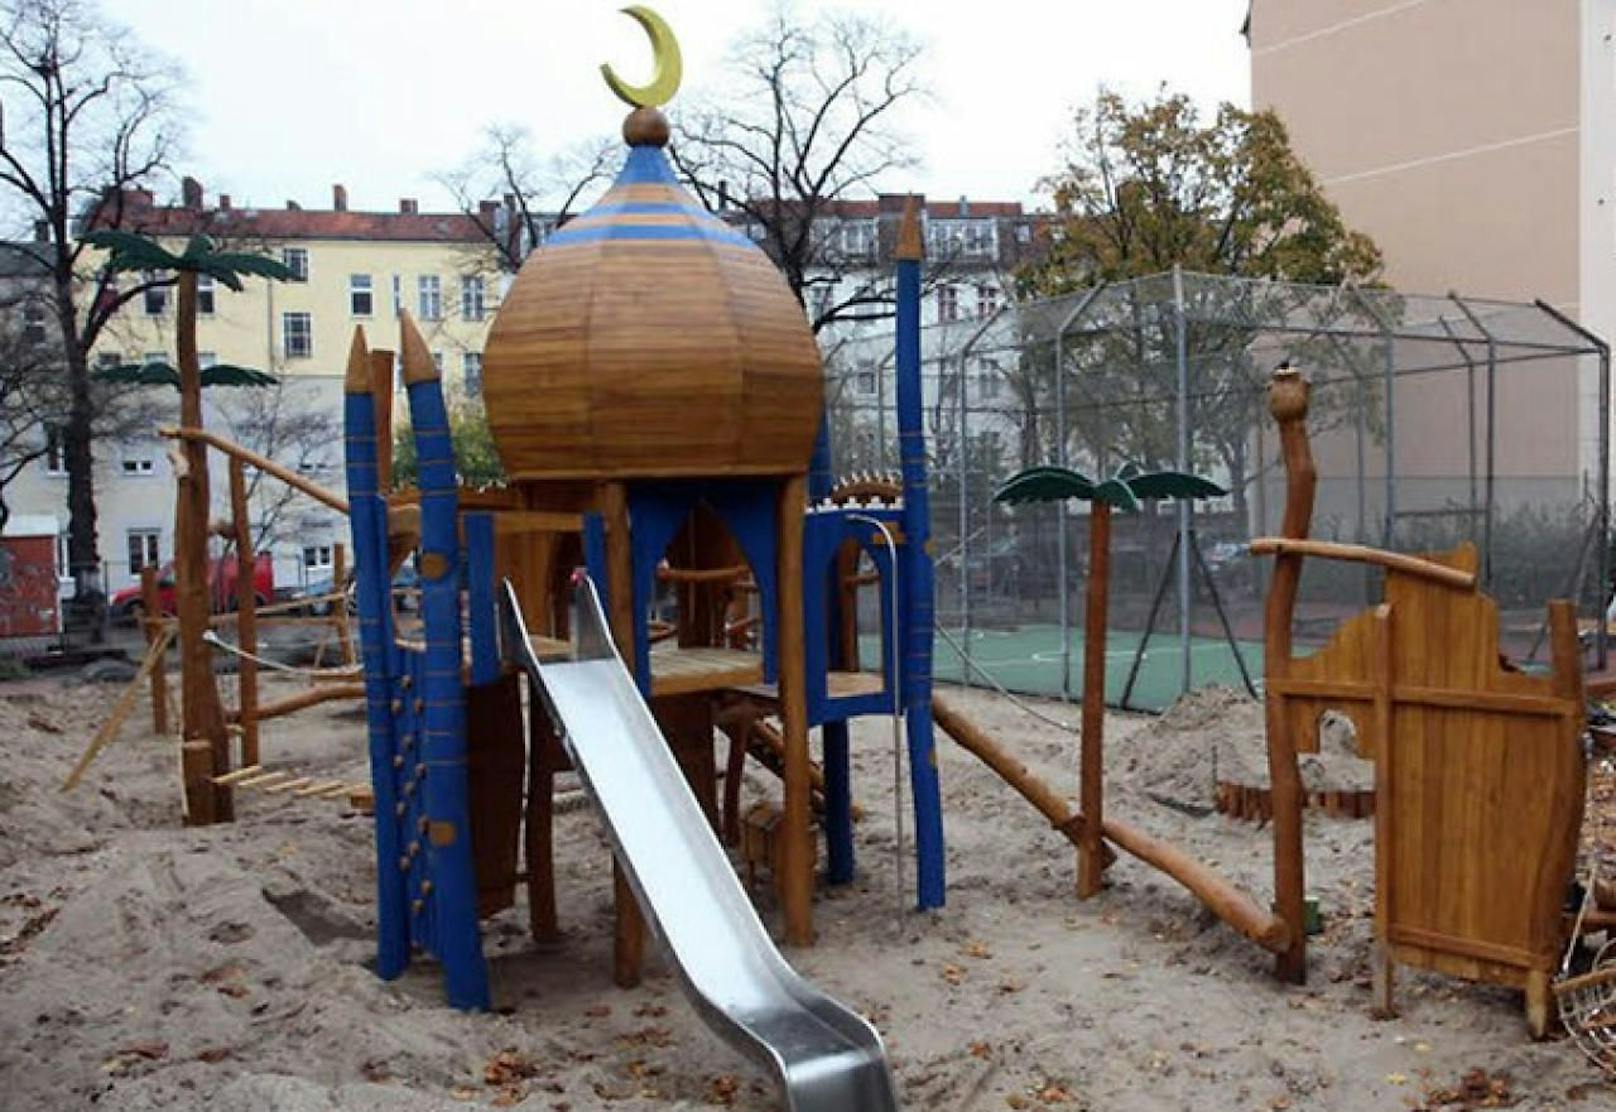 Die Kuppel mit dem Halbmond auf dem Spielplatz erhitzt die Gemüter